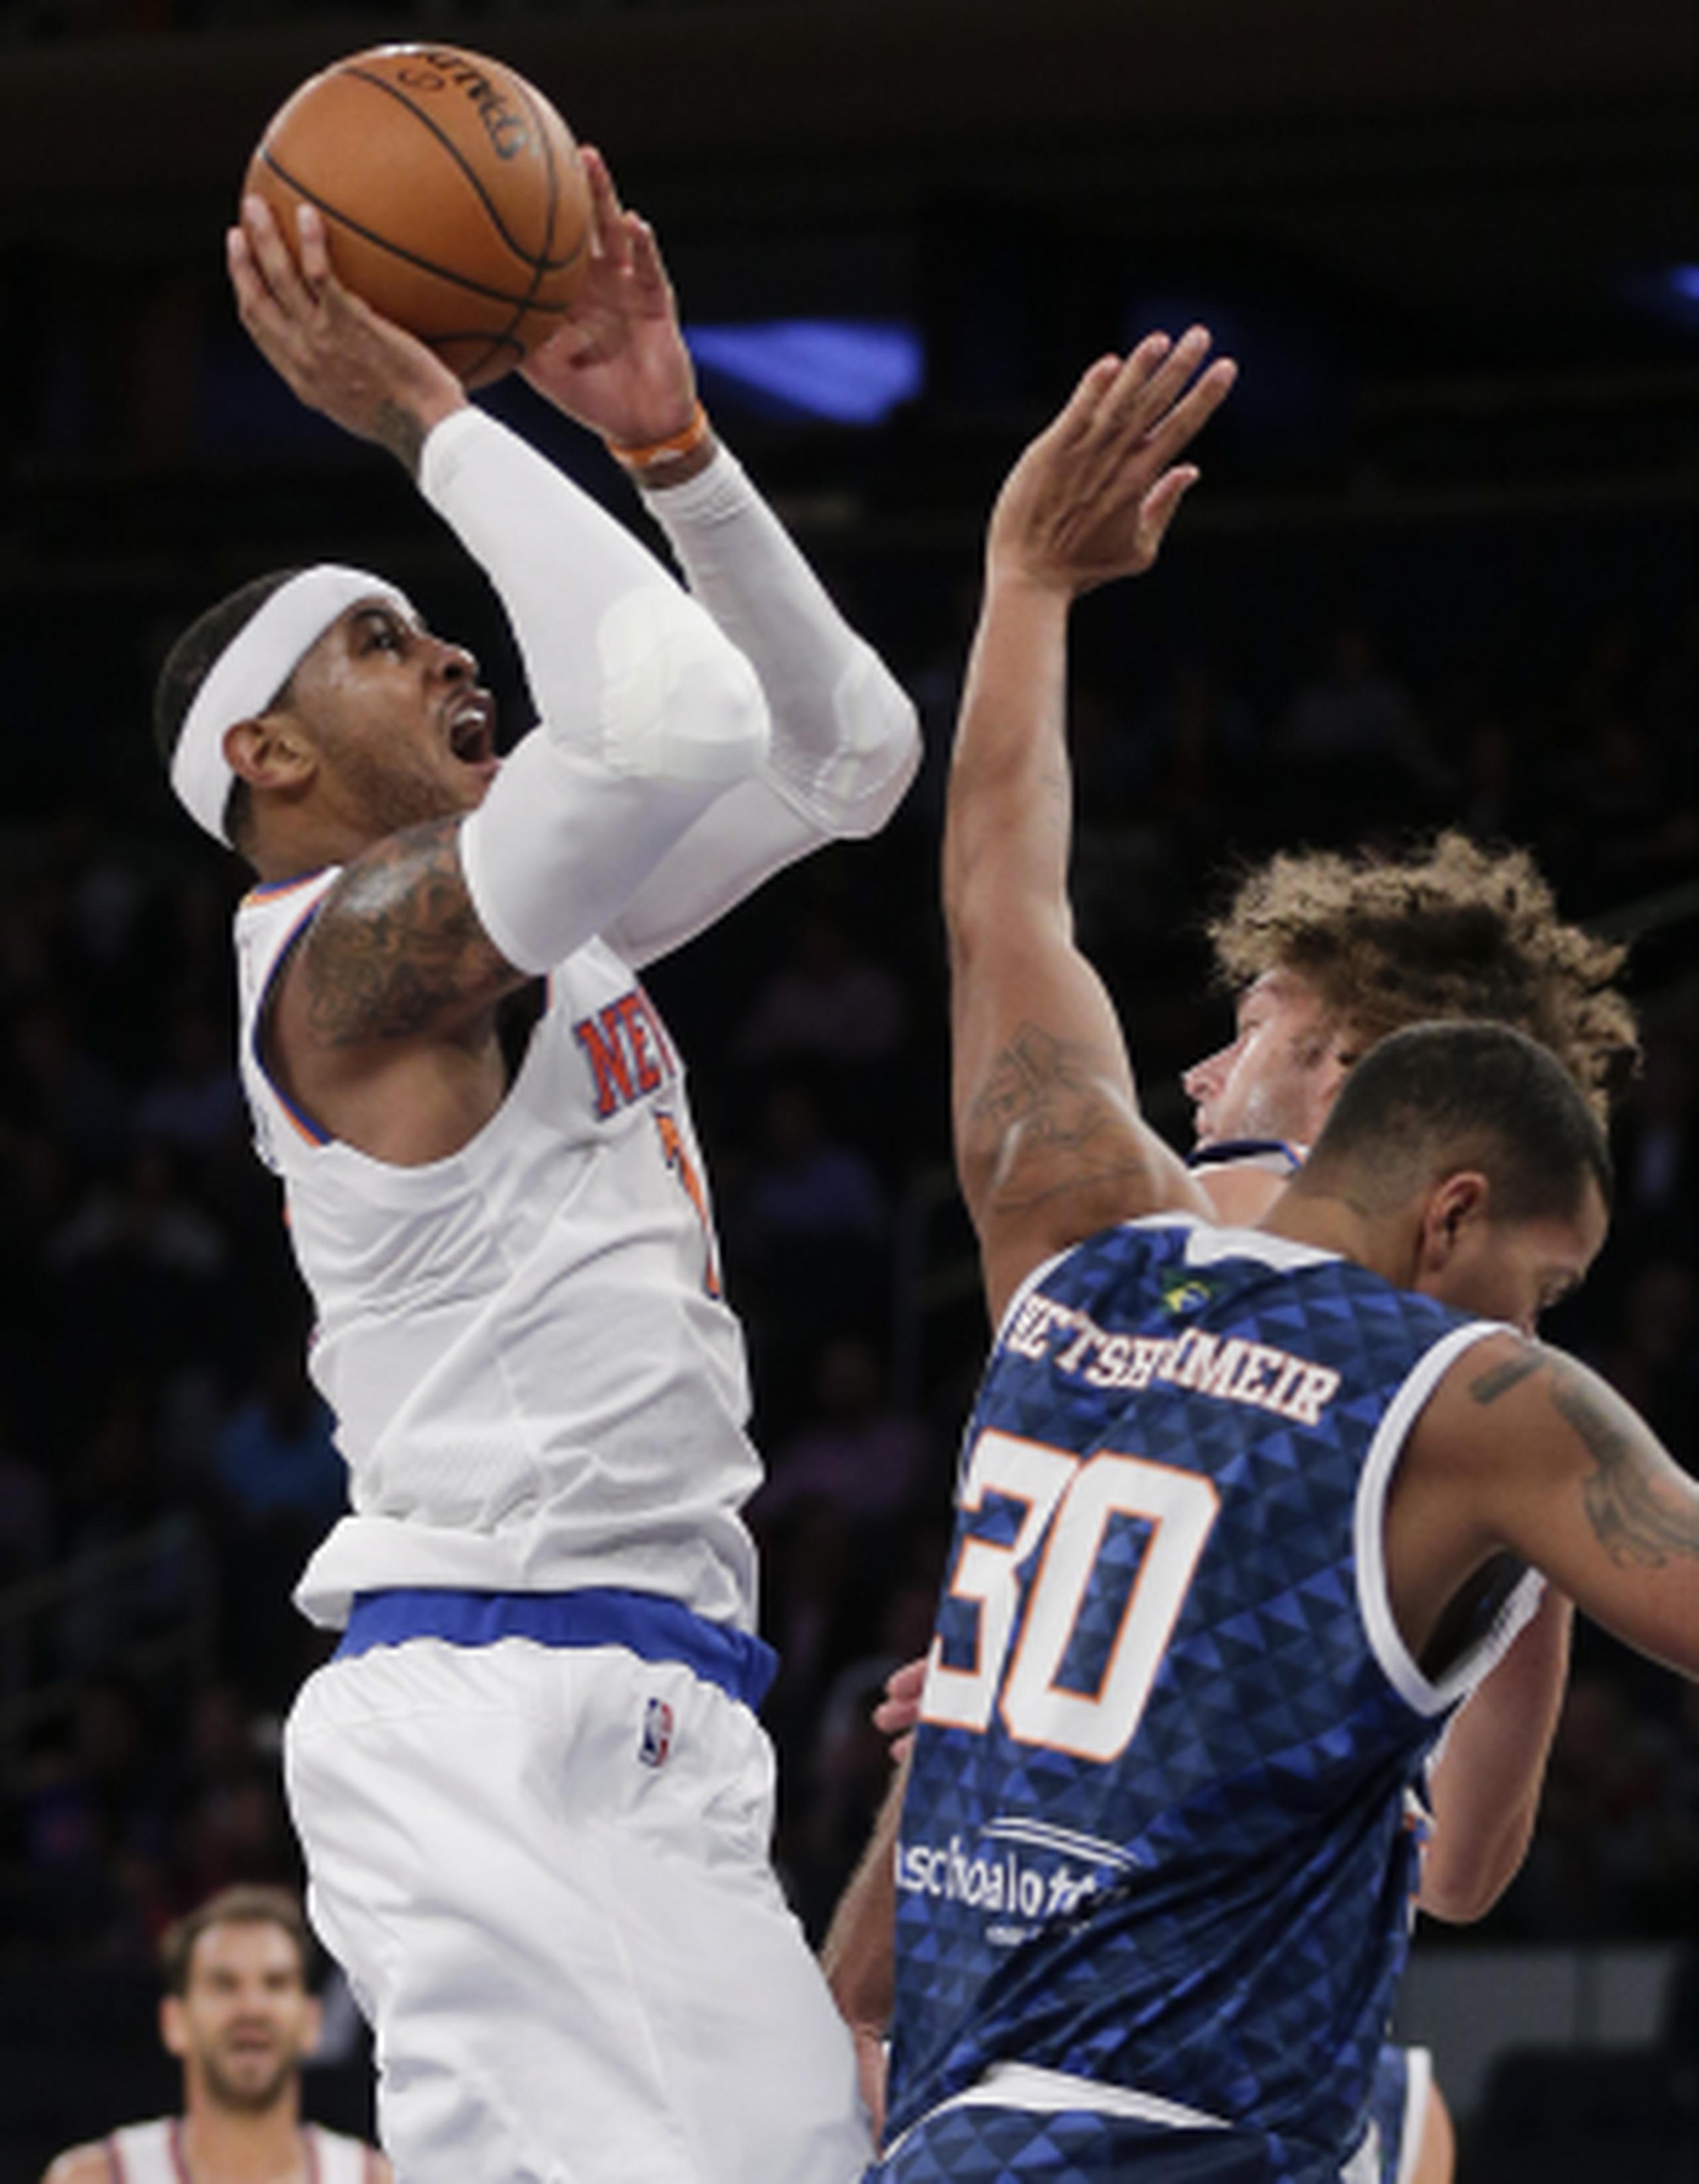 Carmelo Anthony (con el balón) regresa este año a la rotación de los Knicks de Nueva York luego de jugar en tan solo 40 partidos en el 2014-2015 debido a una lesión de rodilla. (AP \ Julie Jacobson)